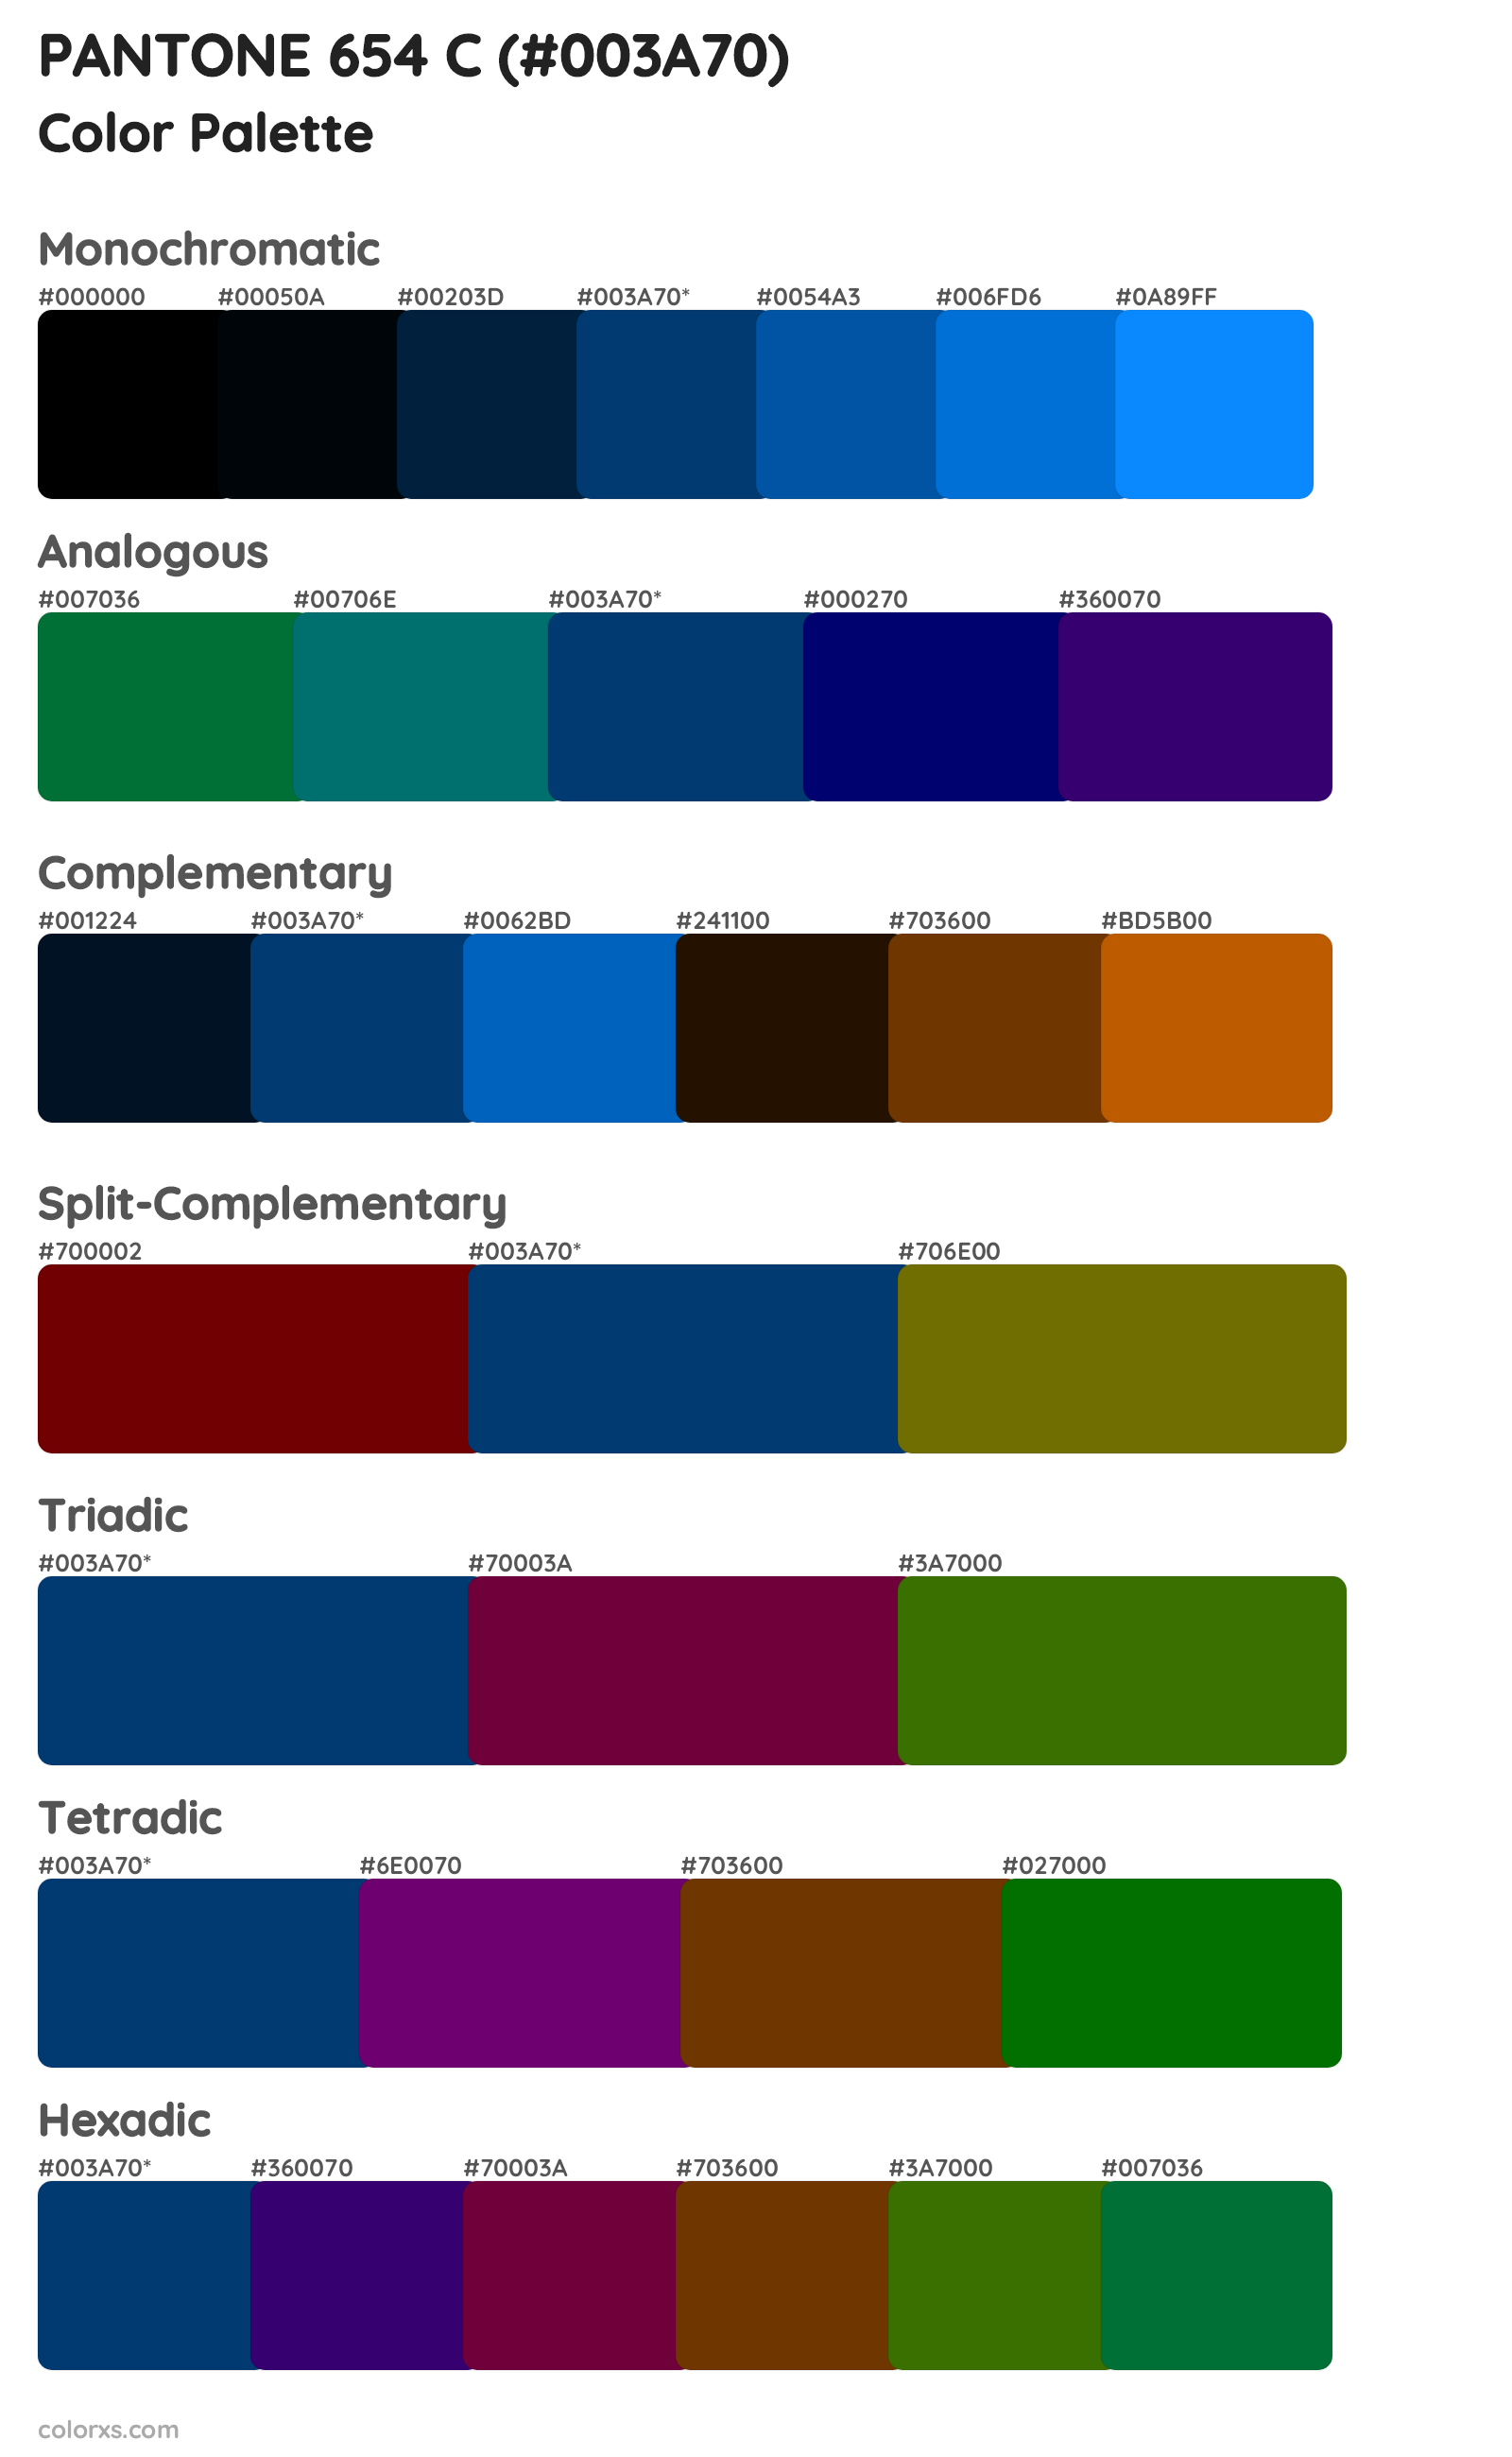 PANTONE 654 C Color Scheme Palettes